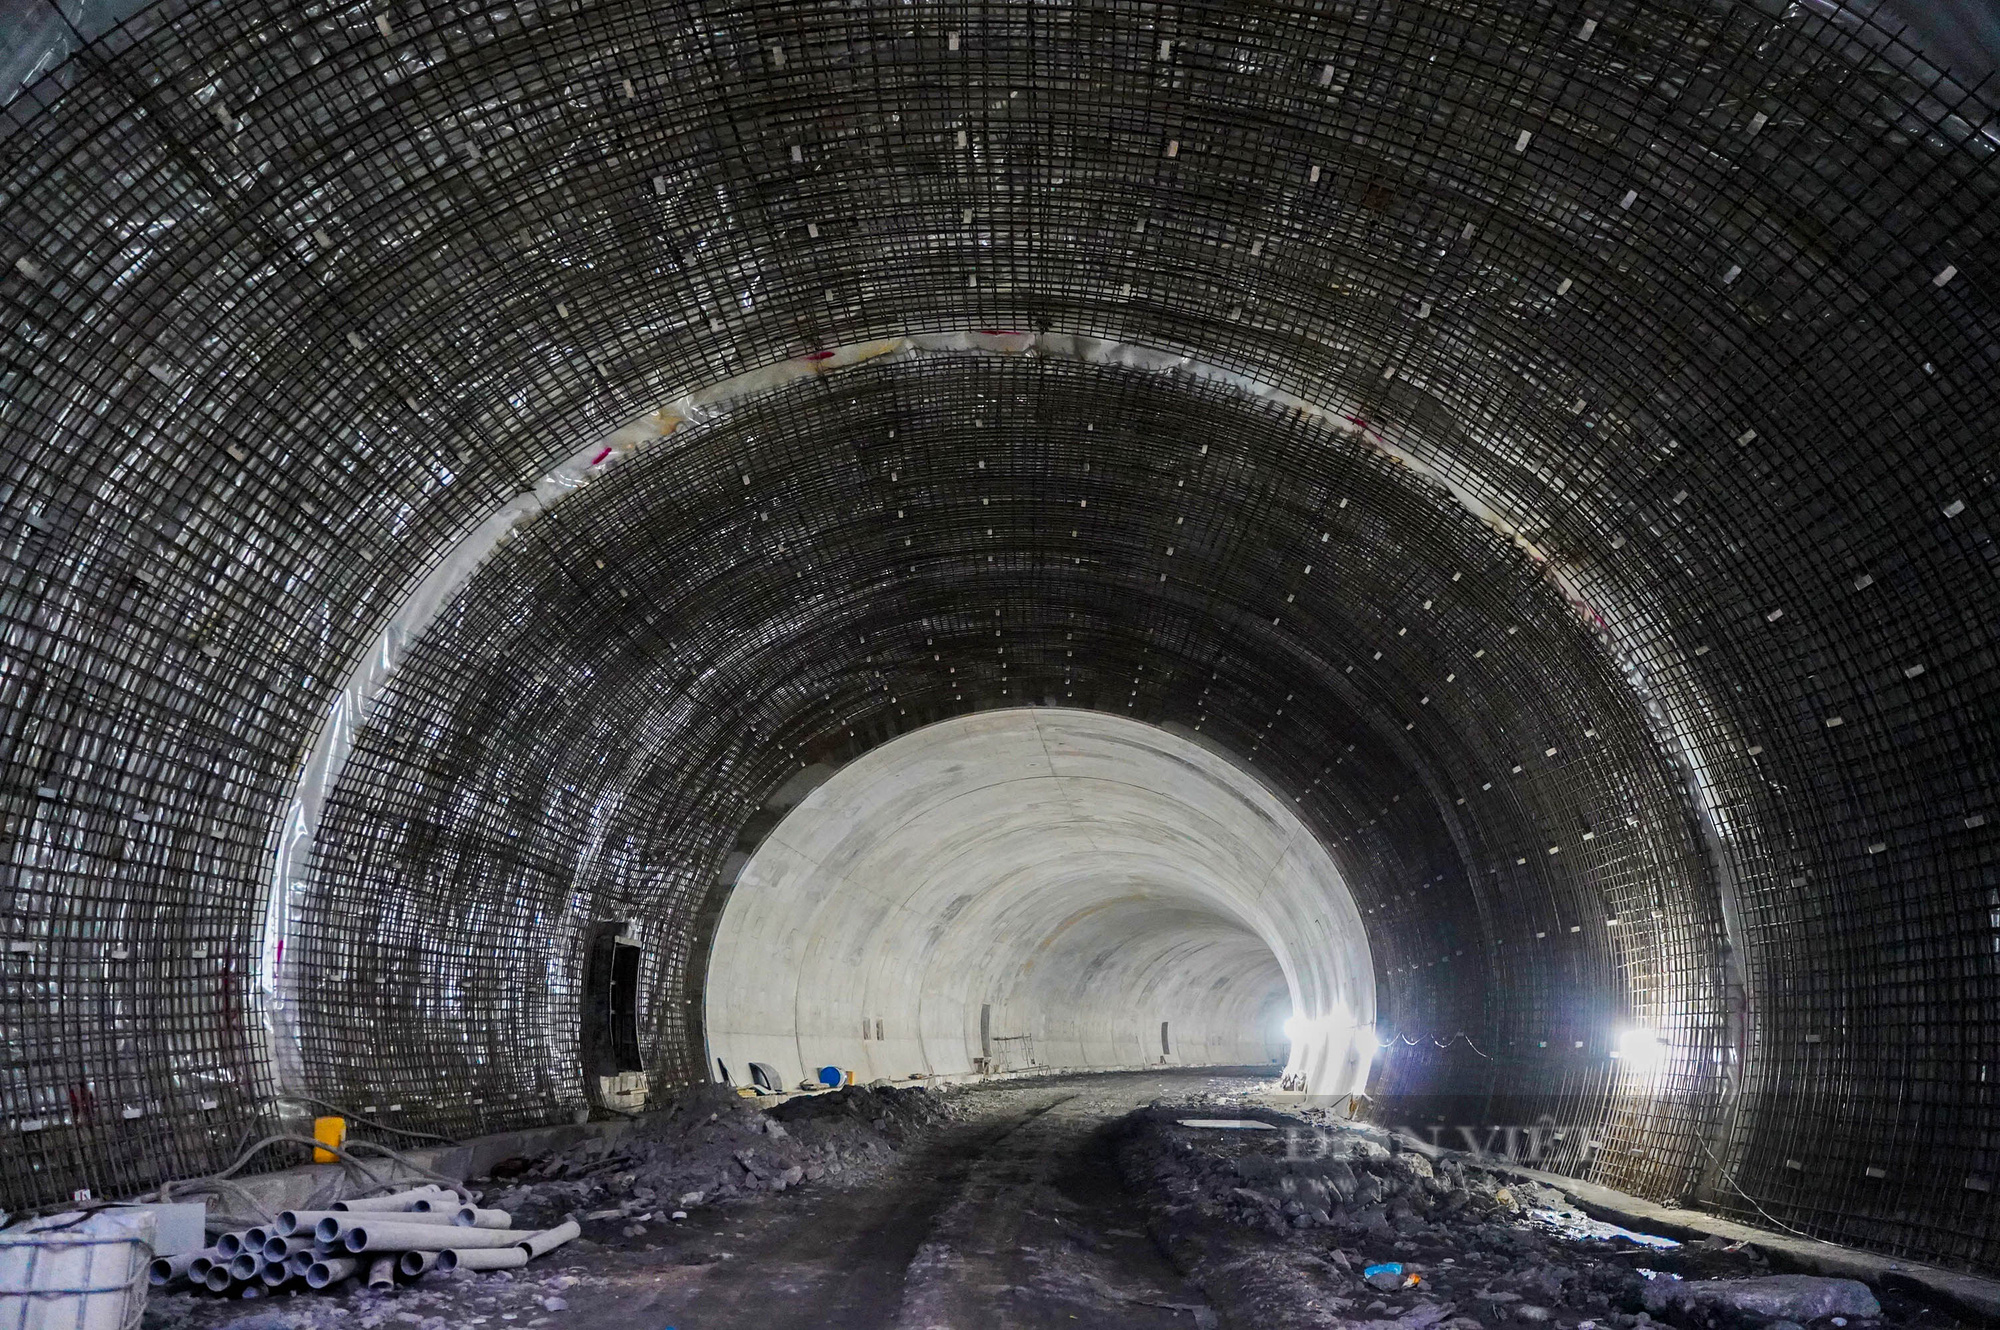 Hàng trăm công nhân thay nhau ngày đêm xây dựng đường hầm bao biển lớn nhất Việt Nam - Ảnh 8.